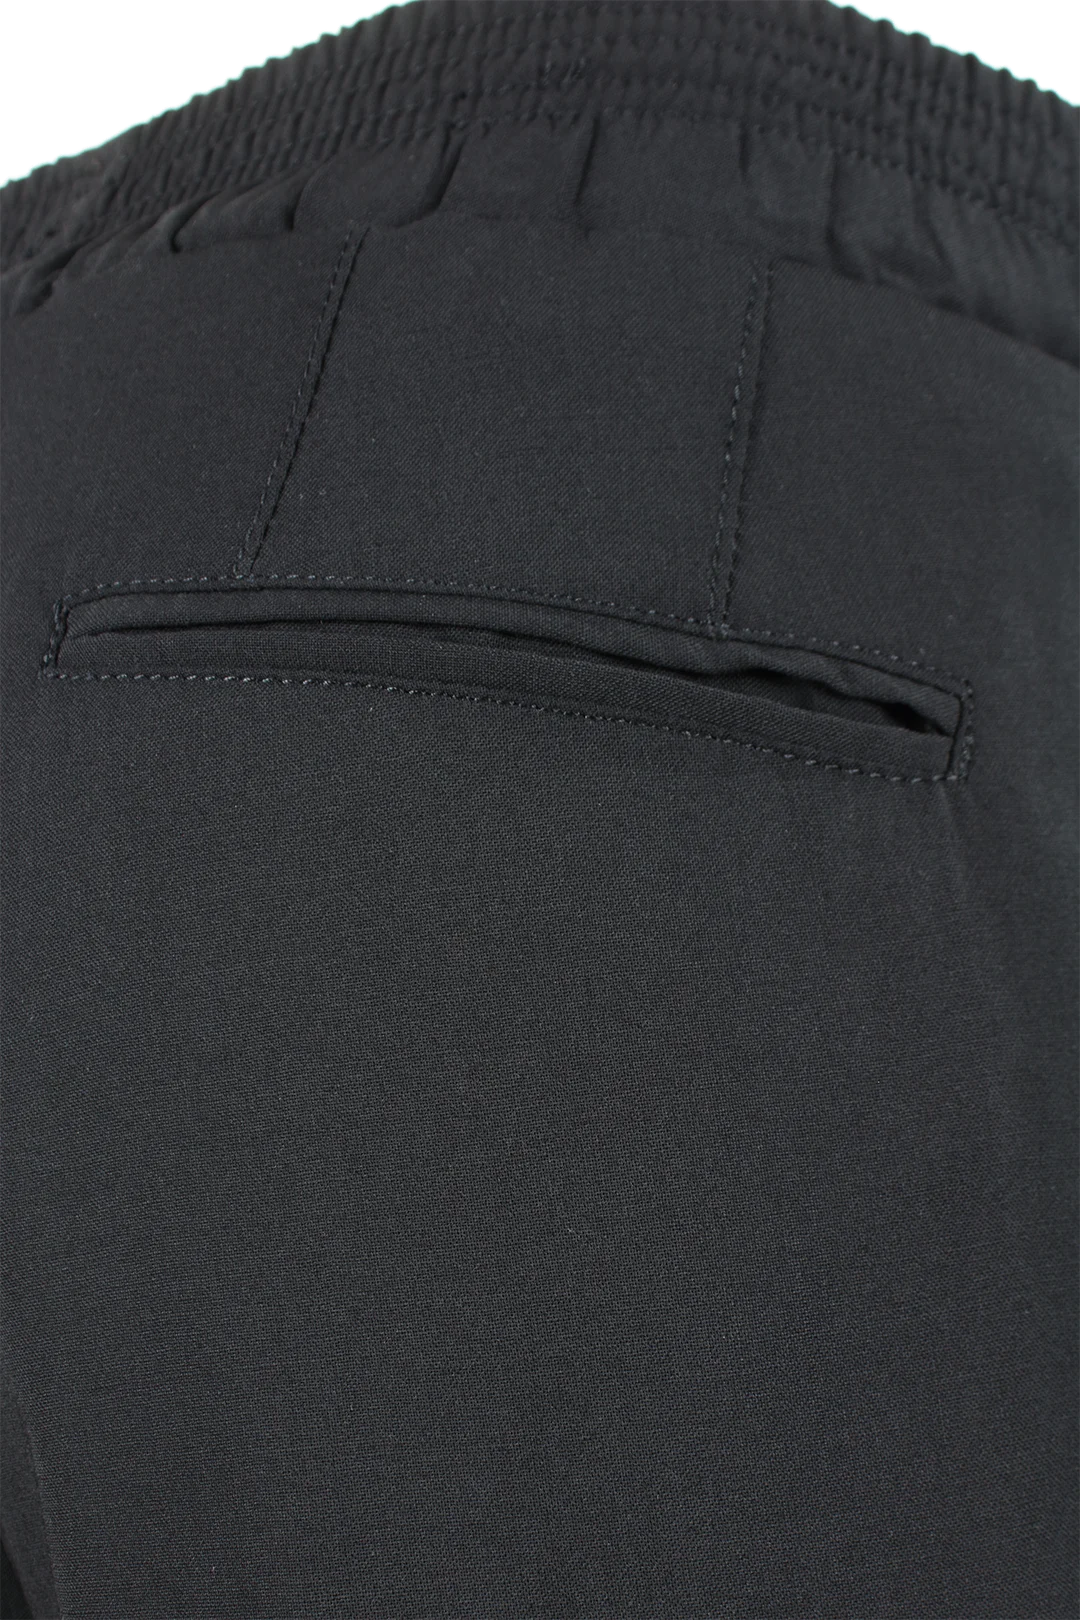 Pantalone lana nera banda laterale rame filetti